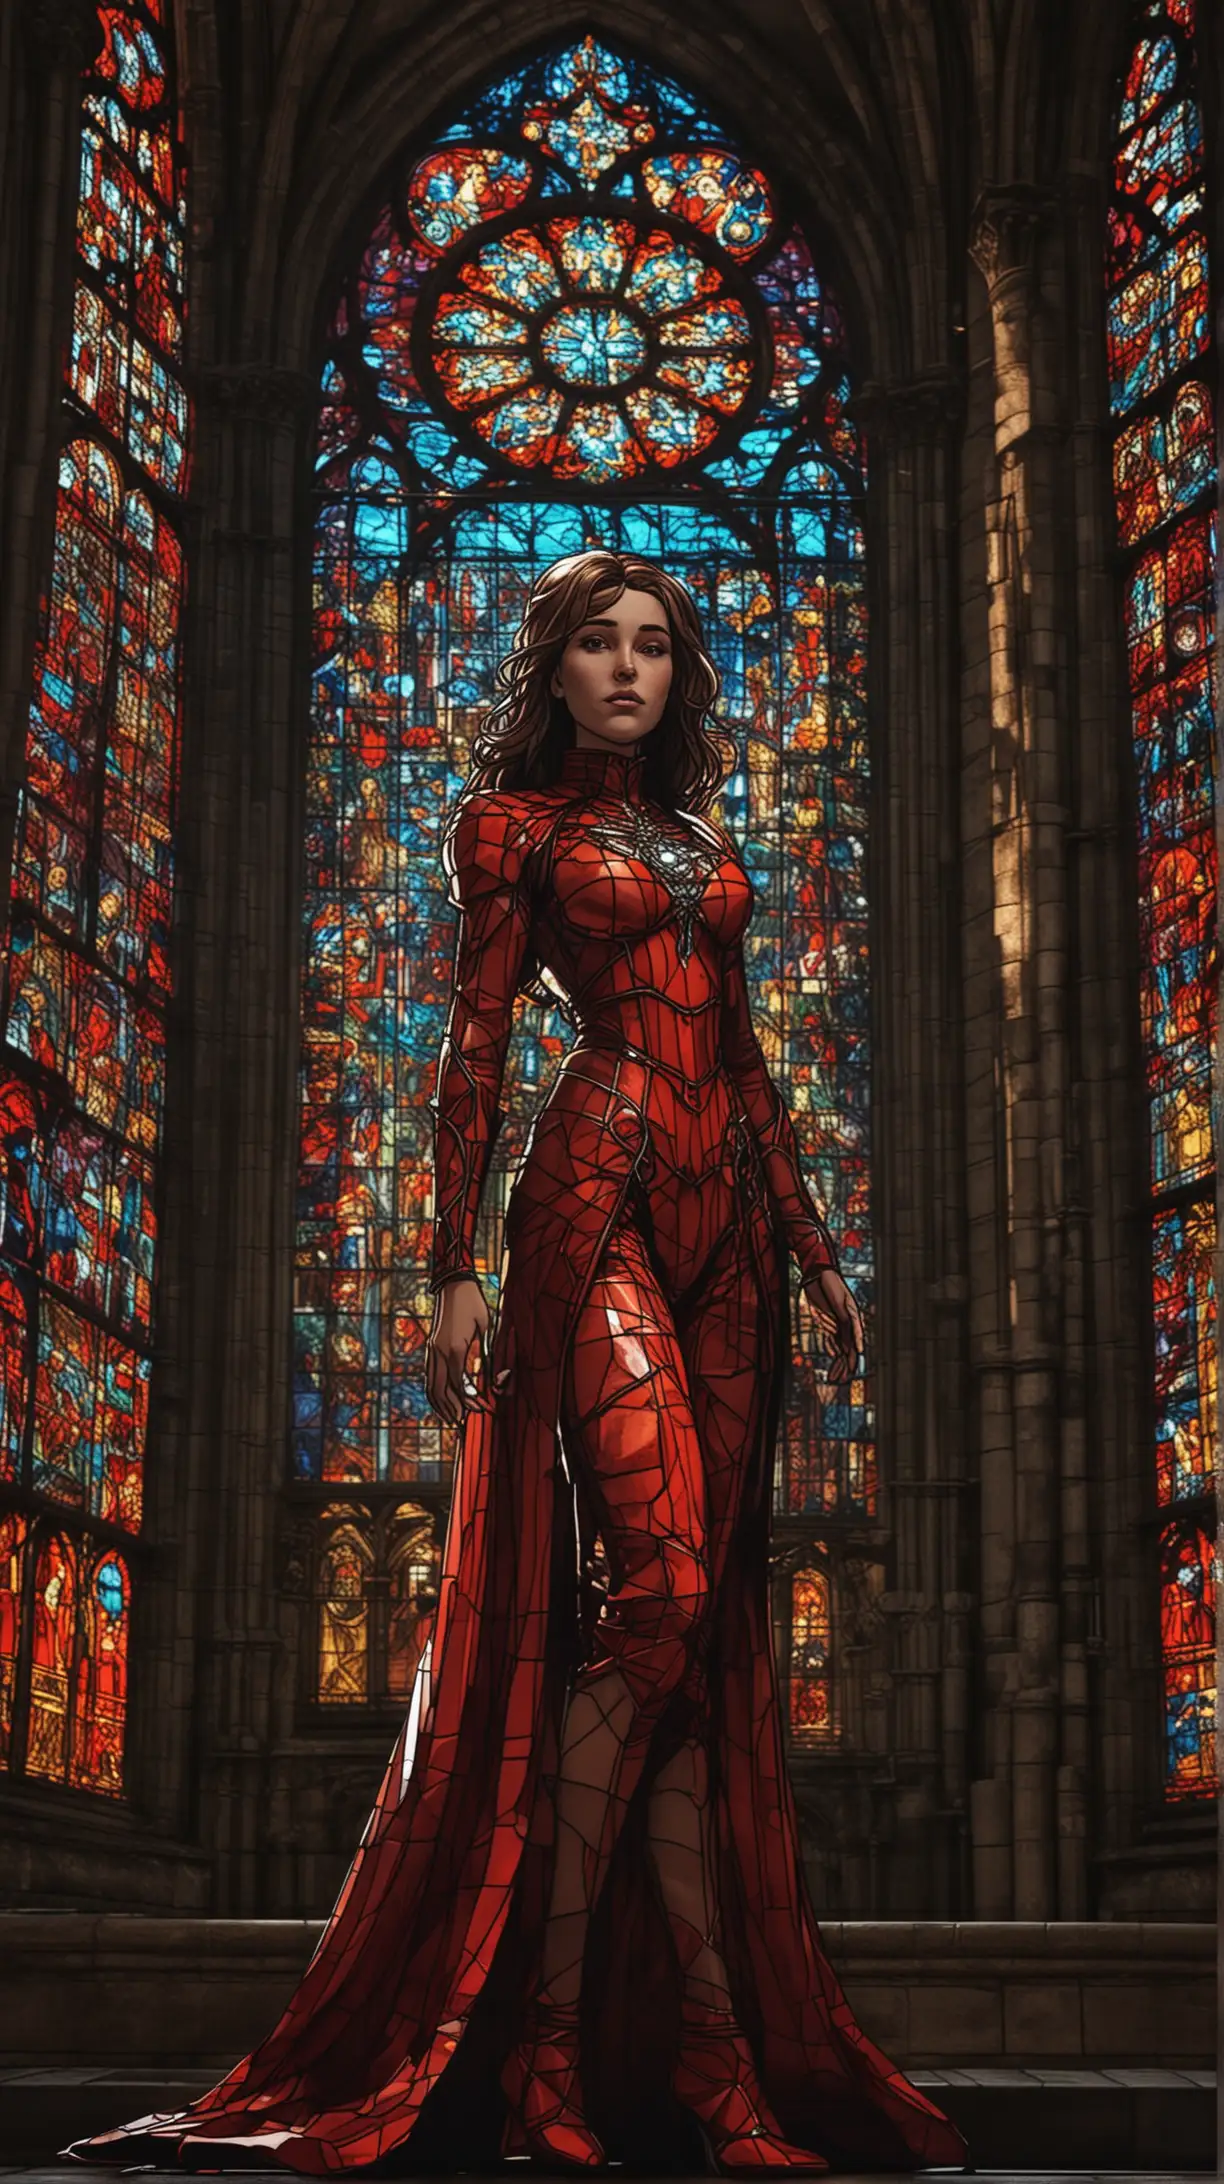 Valentina personaggio fumetto , in una cattedrale  con effetto dalle vetrate